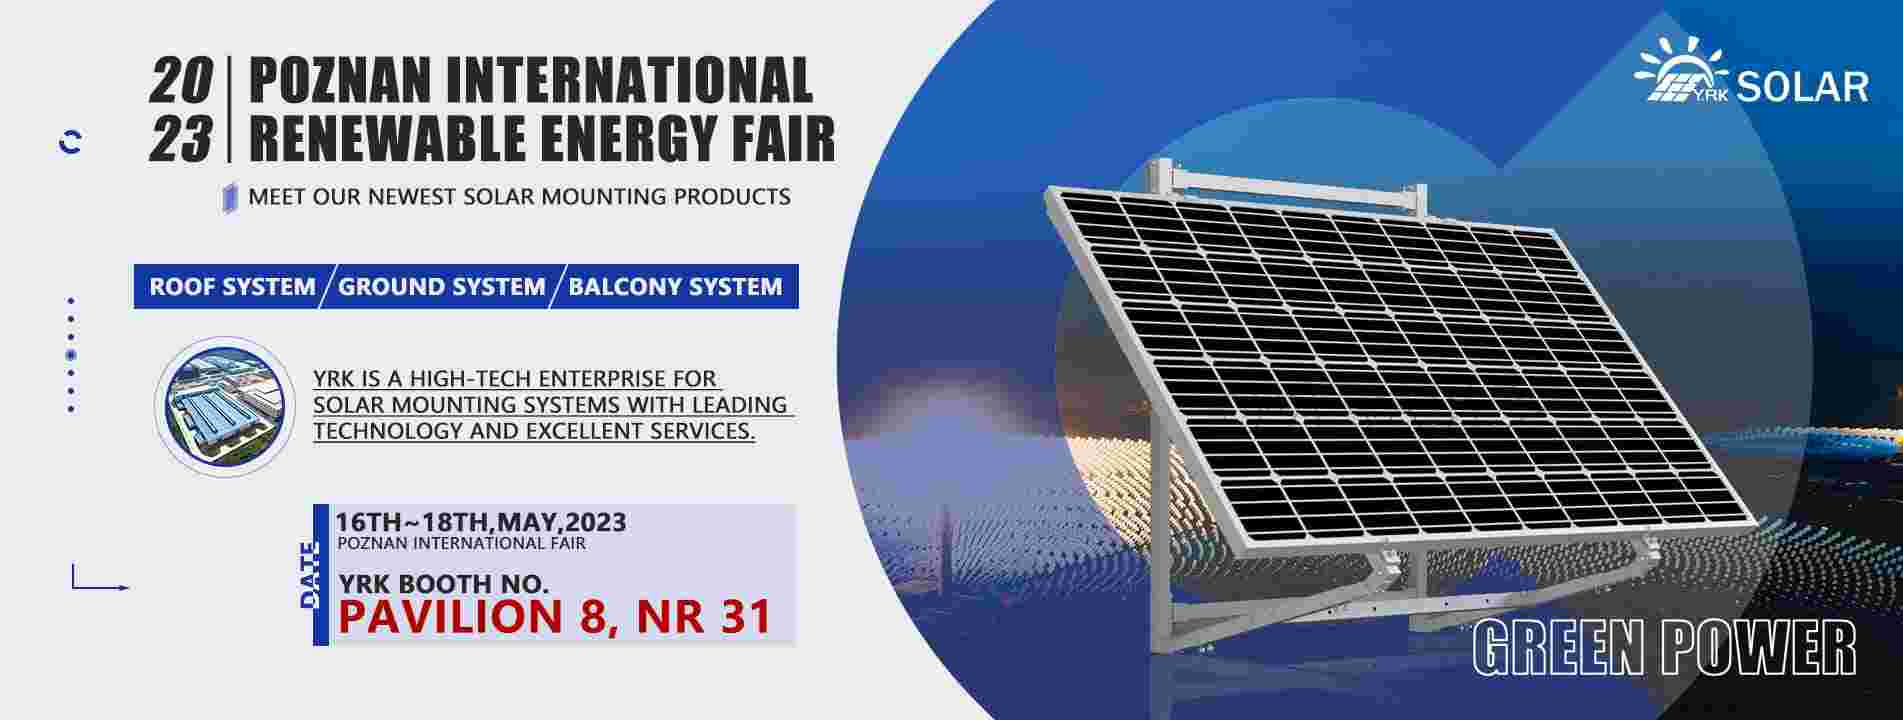 Feria Internacional de Energías Renovables de Poznan 2023